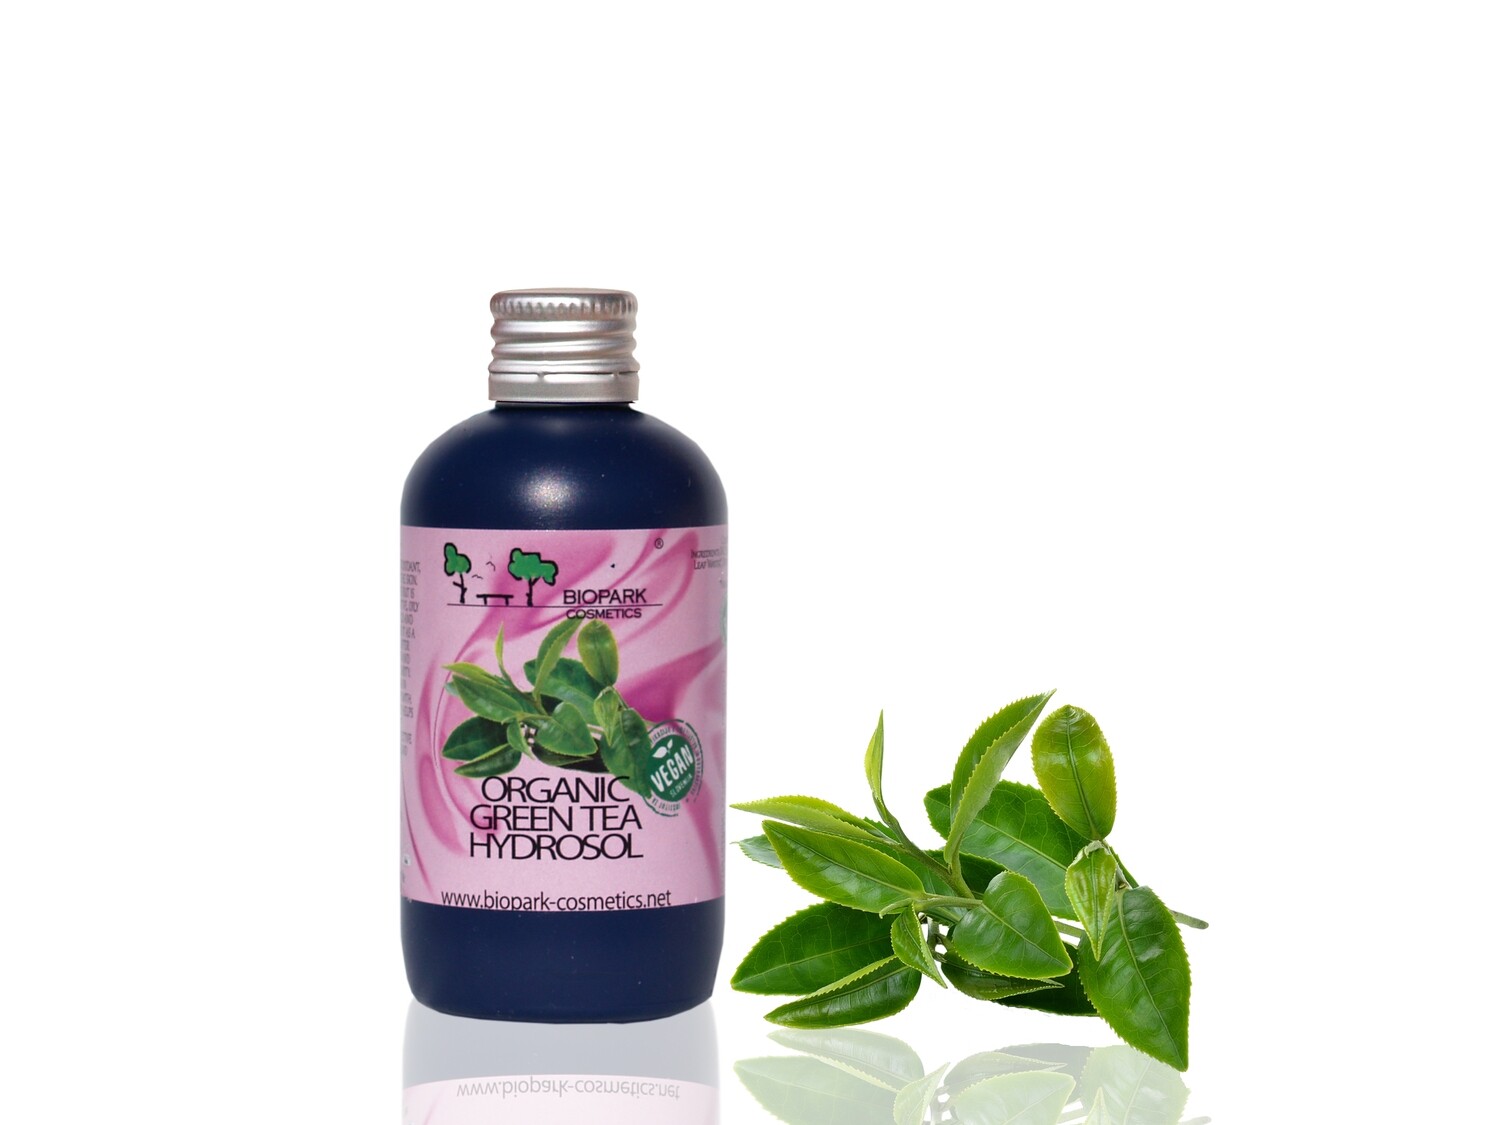 Organic Green Tea Hydrosol, 100ml